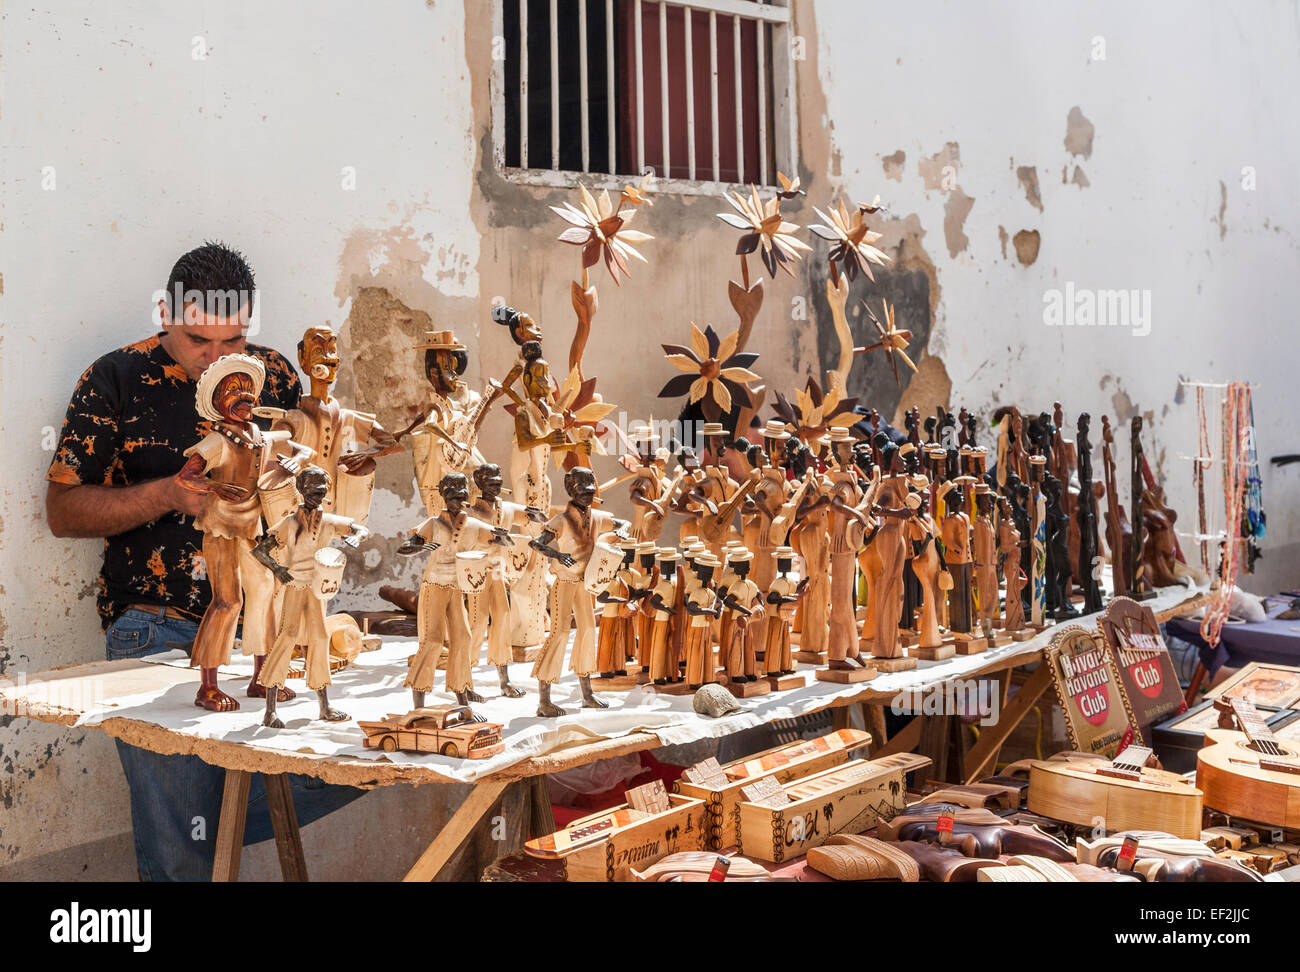 Kubanische lokalen Lebensstil: Lokale männliche Standbesitzer mit hölzernen Statuen von Menschen zum Verkauf als Souvenirs an einem Stand in der Innenstadt von Trinidad, Kuba Stockfoto